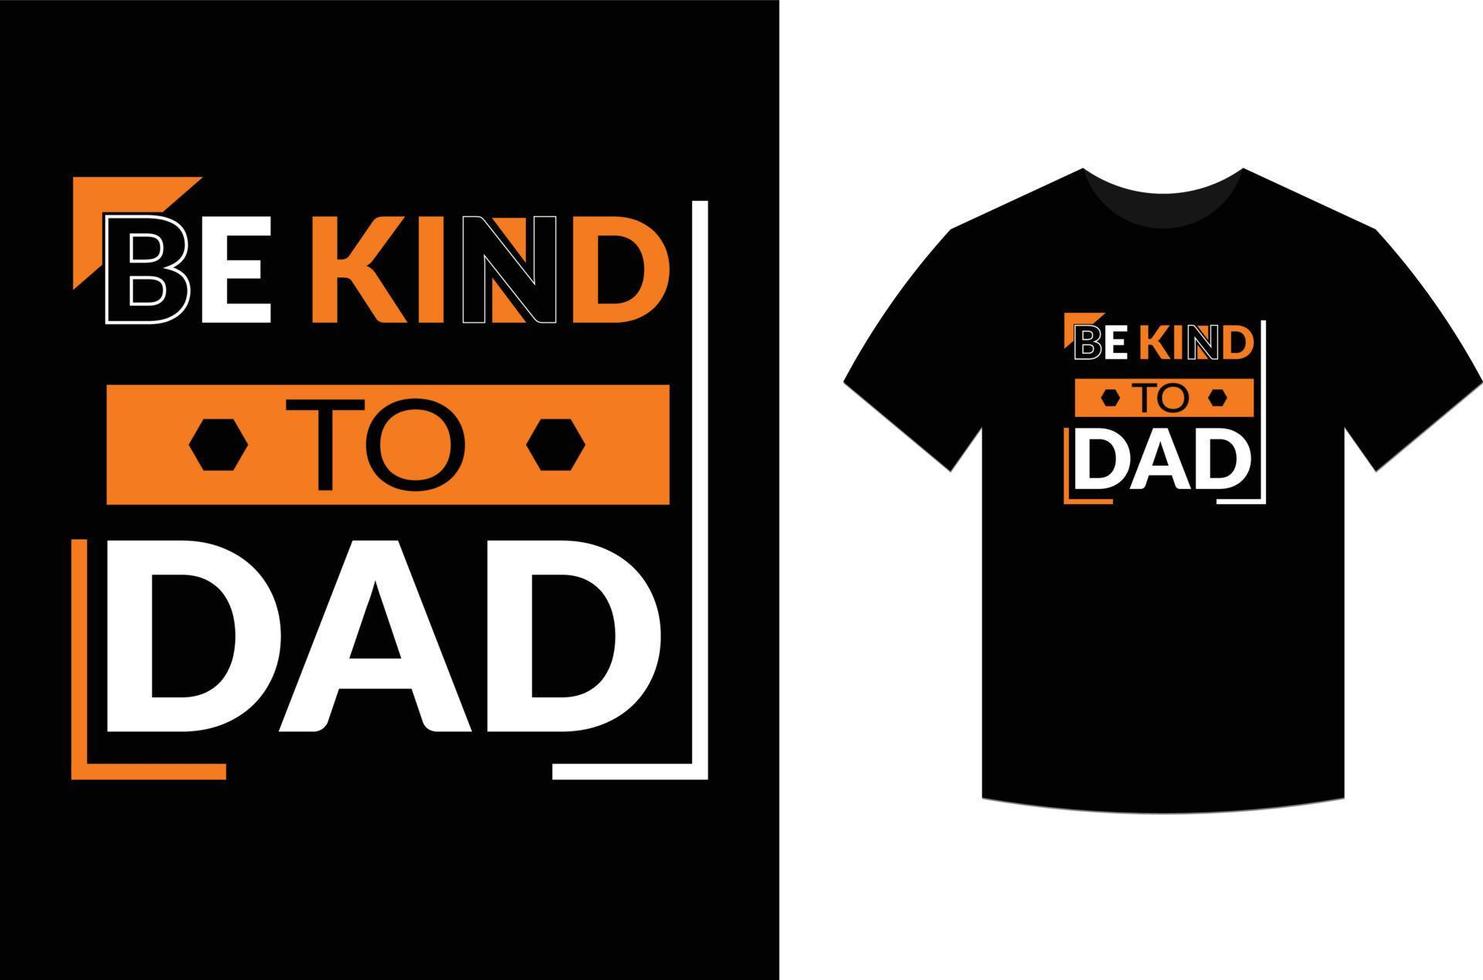 vara snäll av pappa, typografi vektor fars citat t-shirt design.